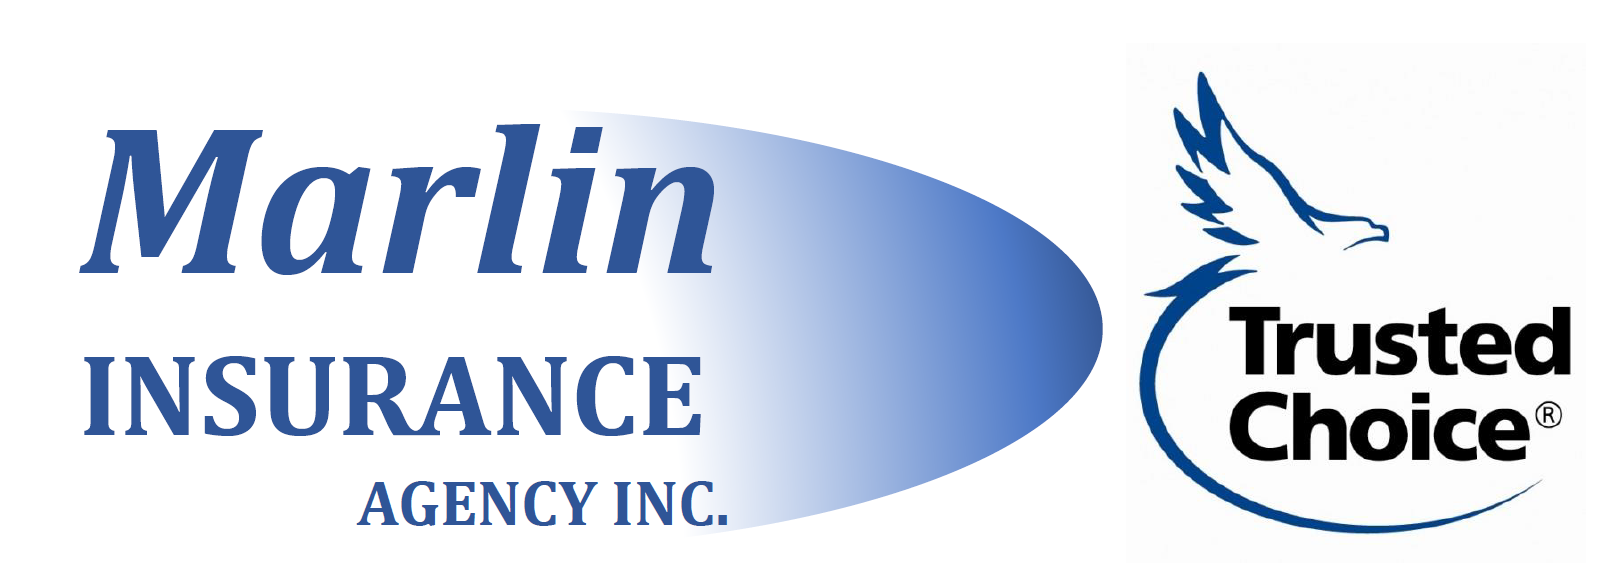 marlin travel insurance